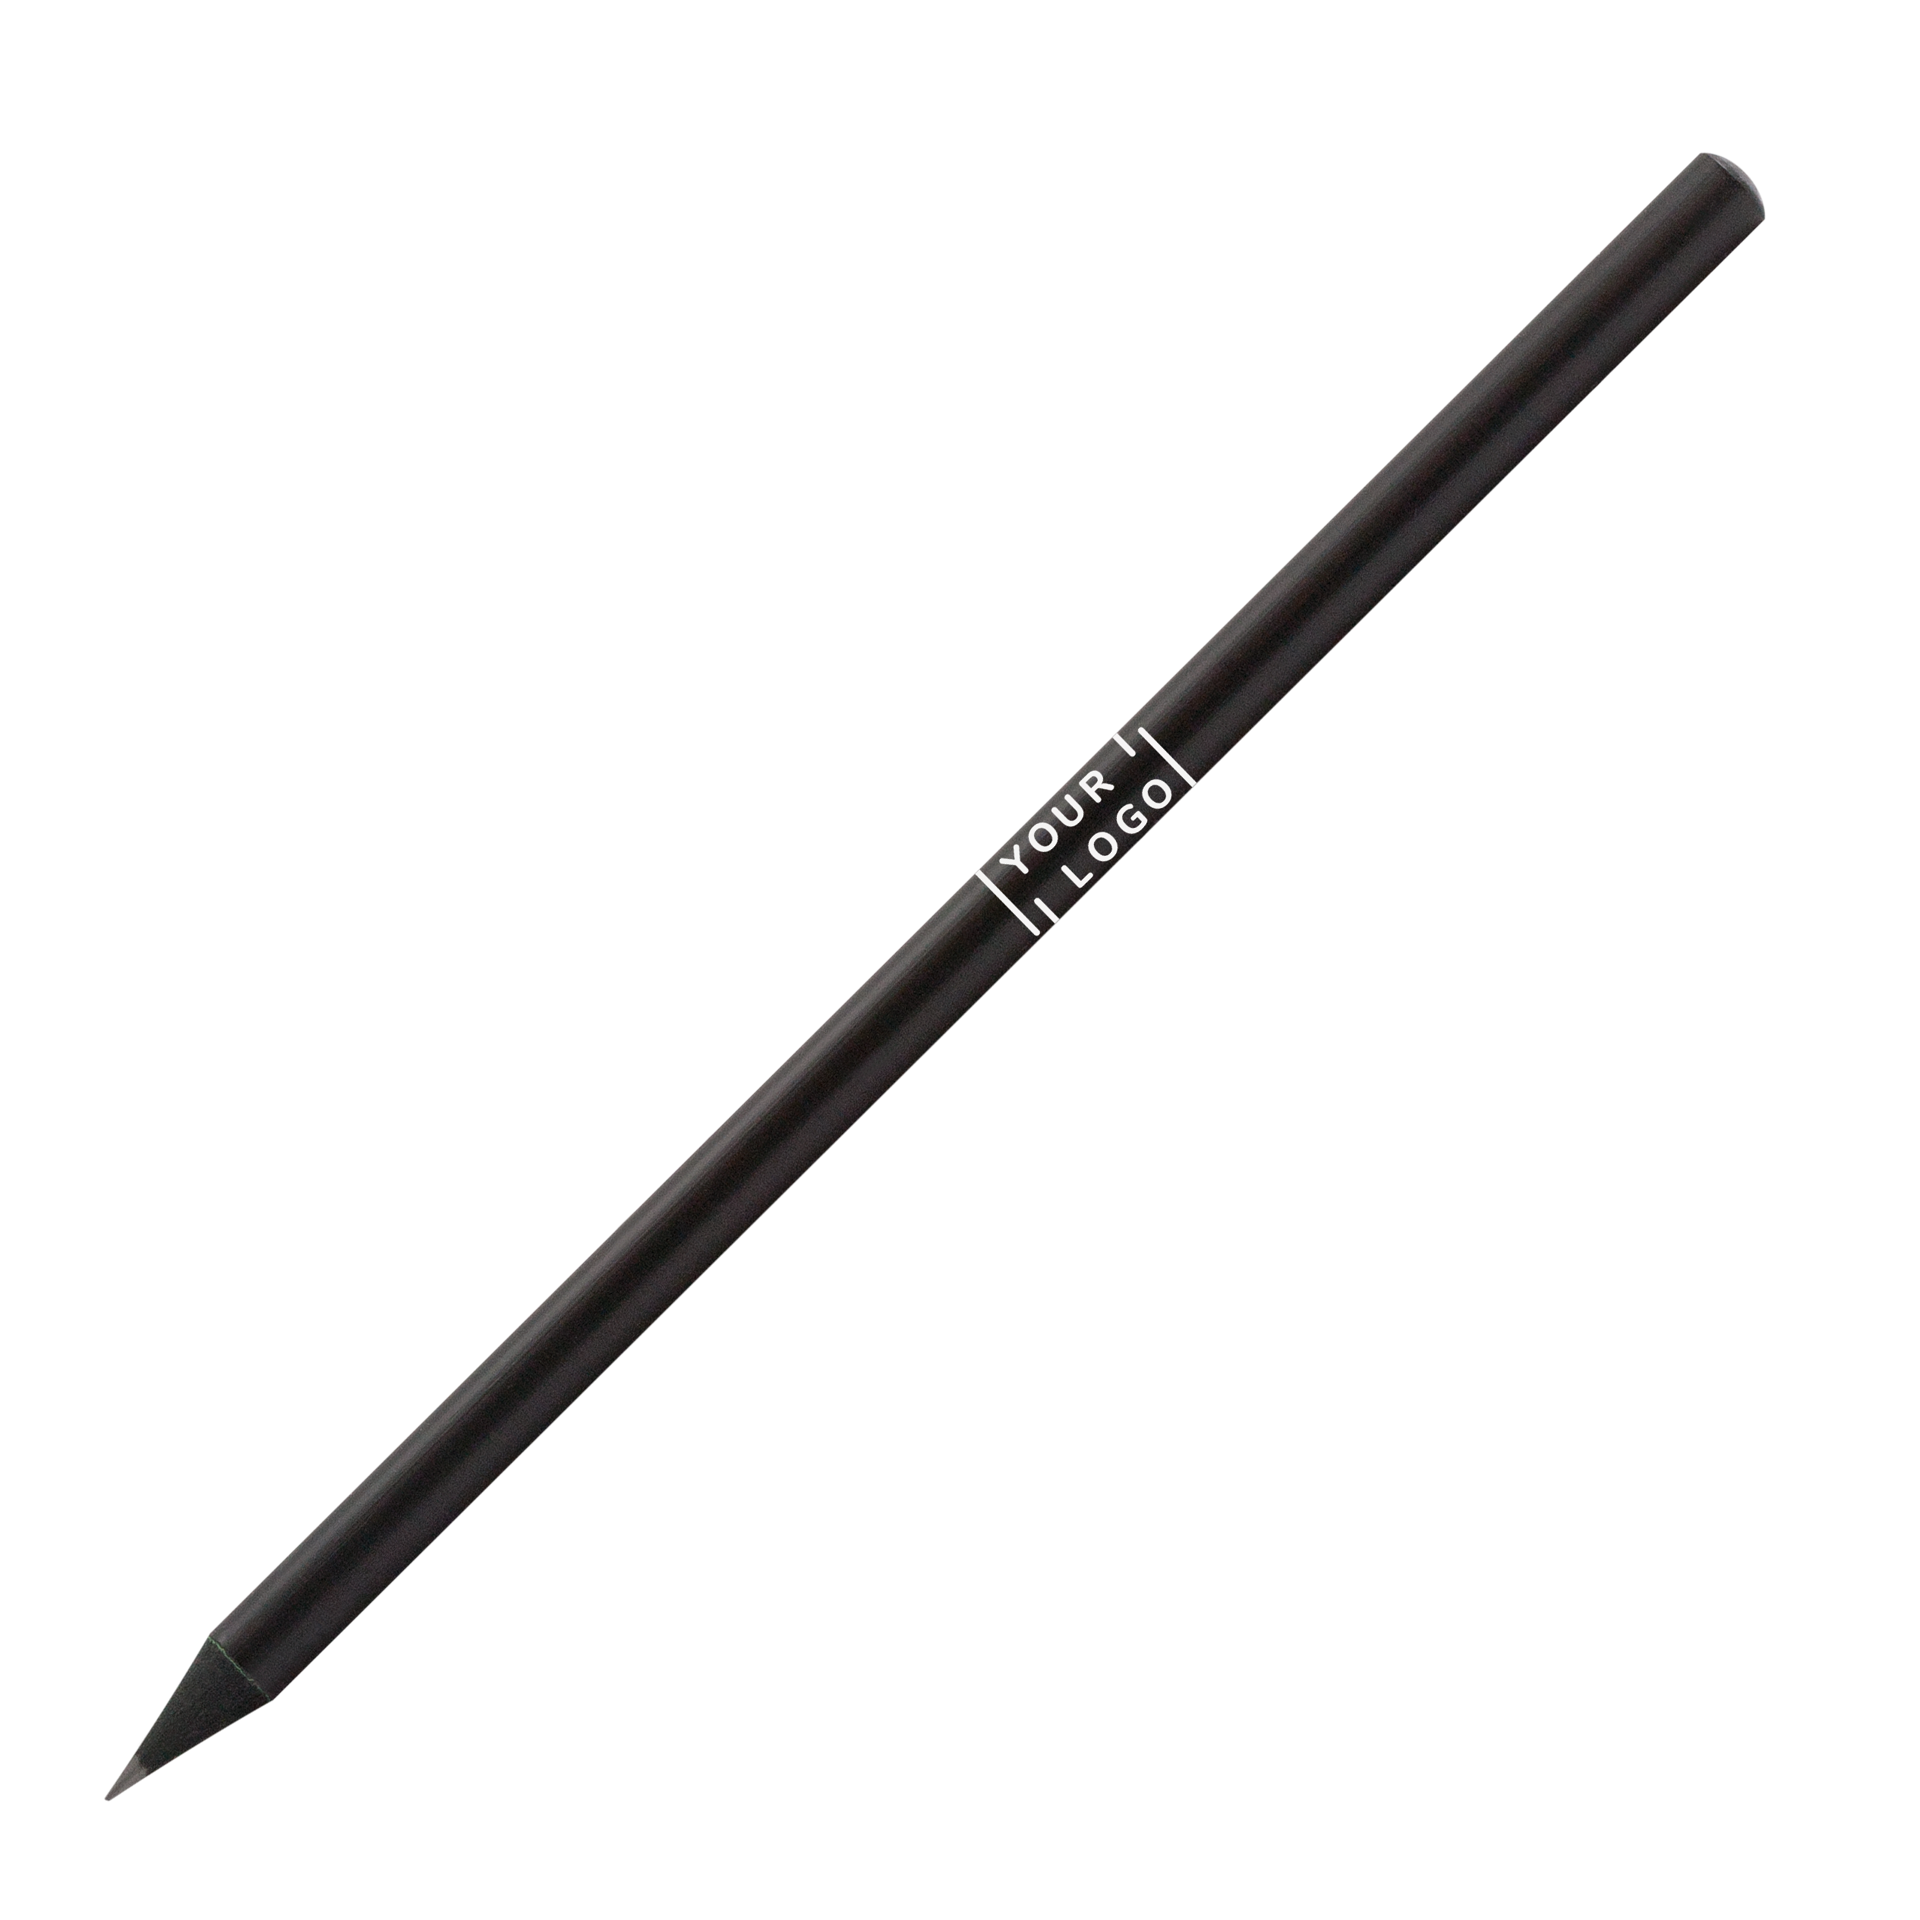 Bleistift | All Black Holz | schwarz eingefärbt rund | 17,5 cm